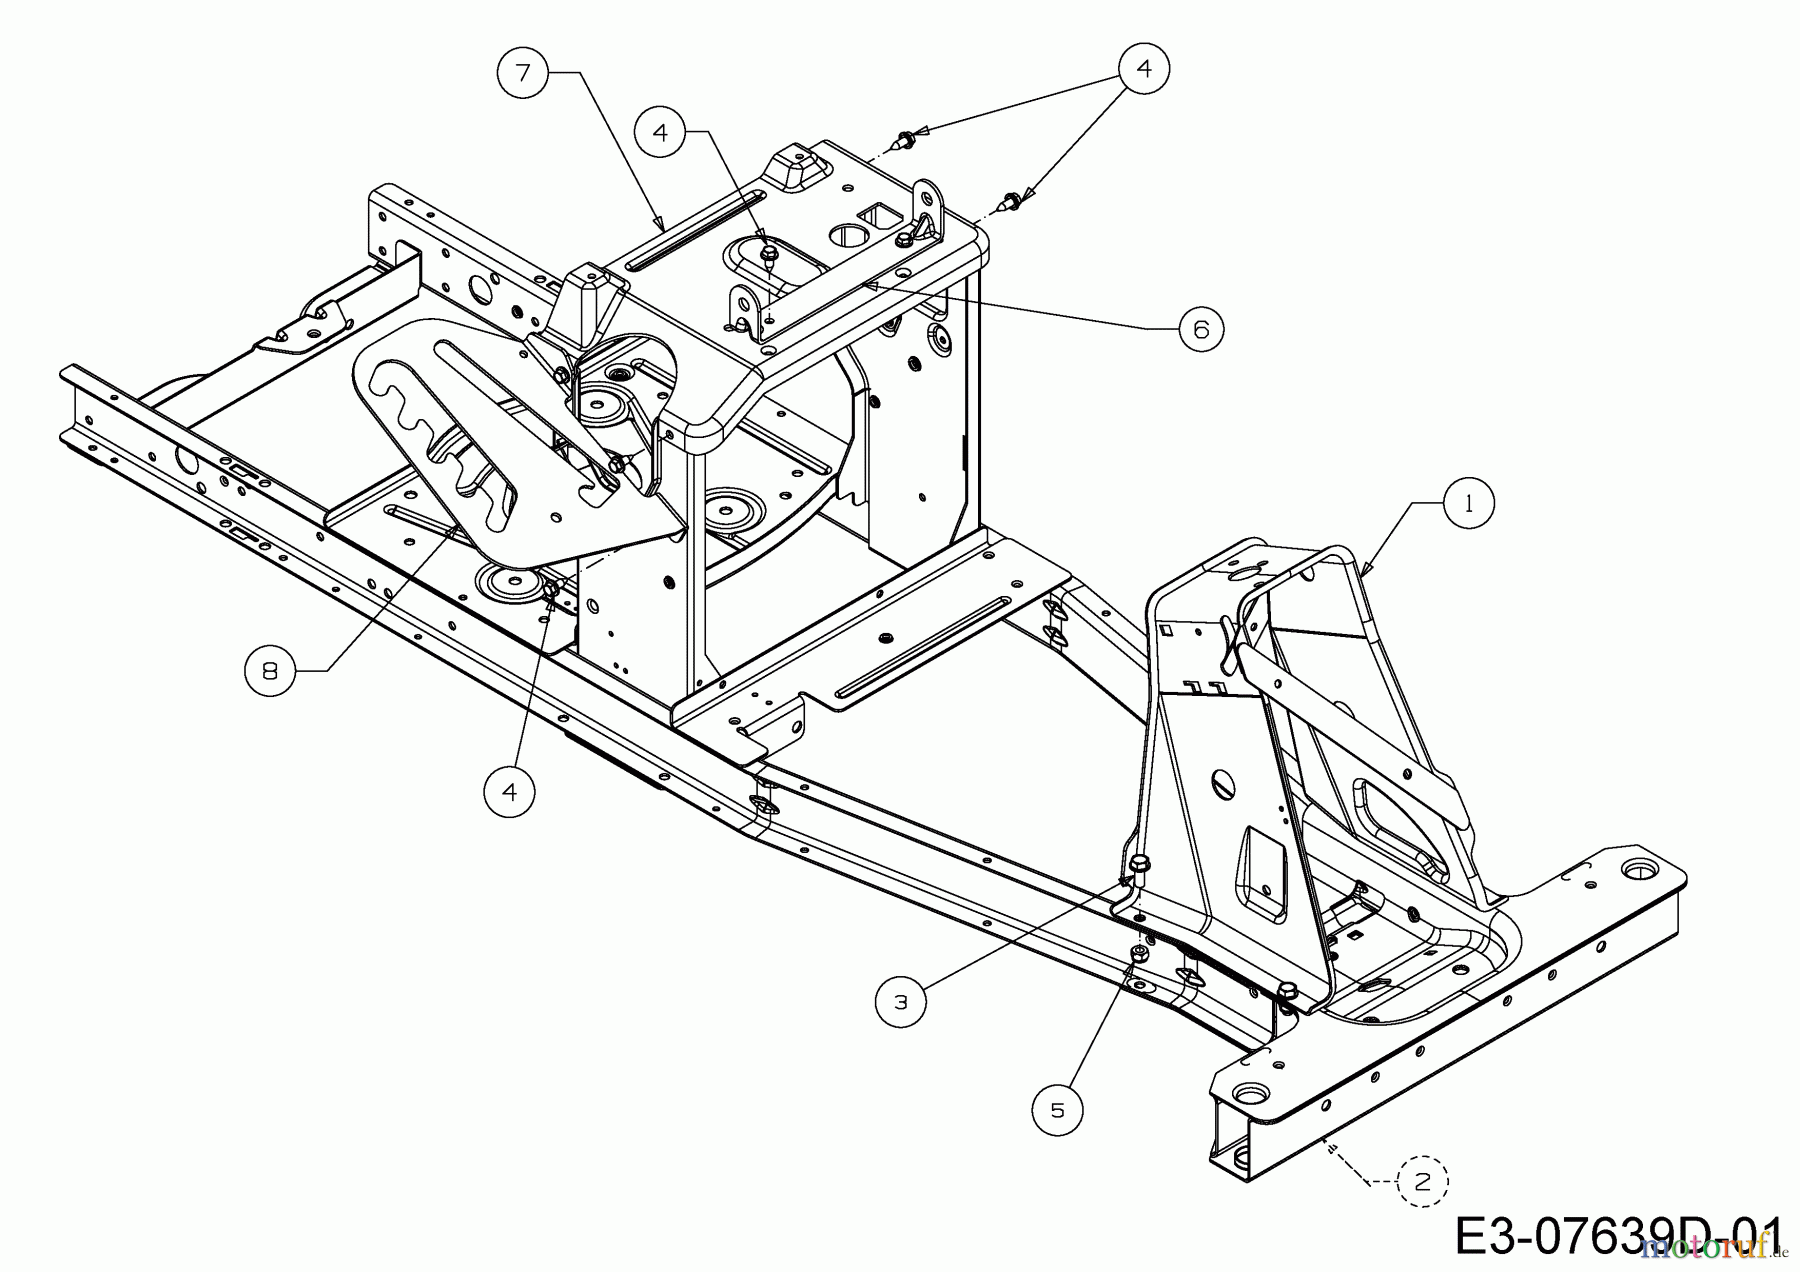  WOLF-Garten Expert Rasentraktoren Scooter Pro 13B226HD650  (2017) Rahmen